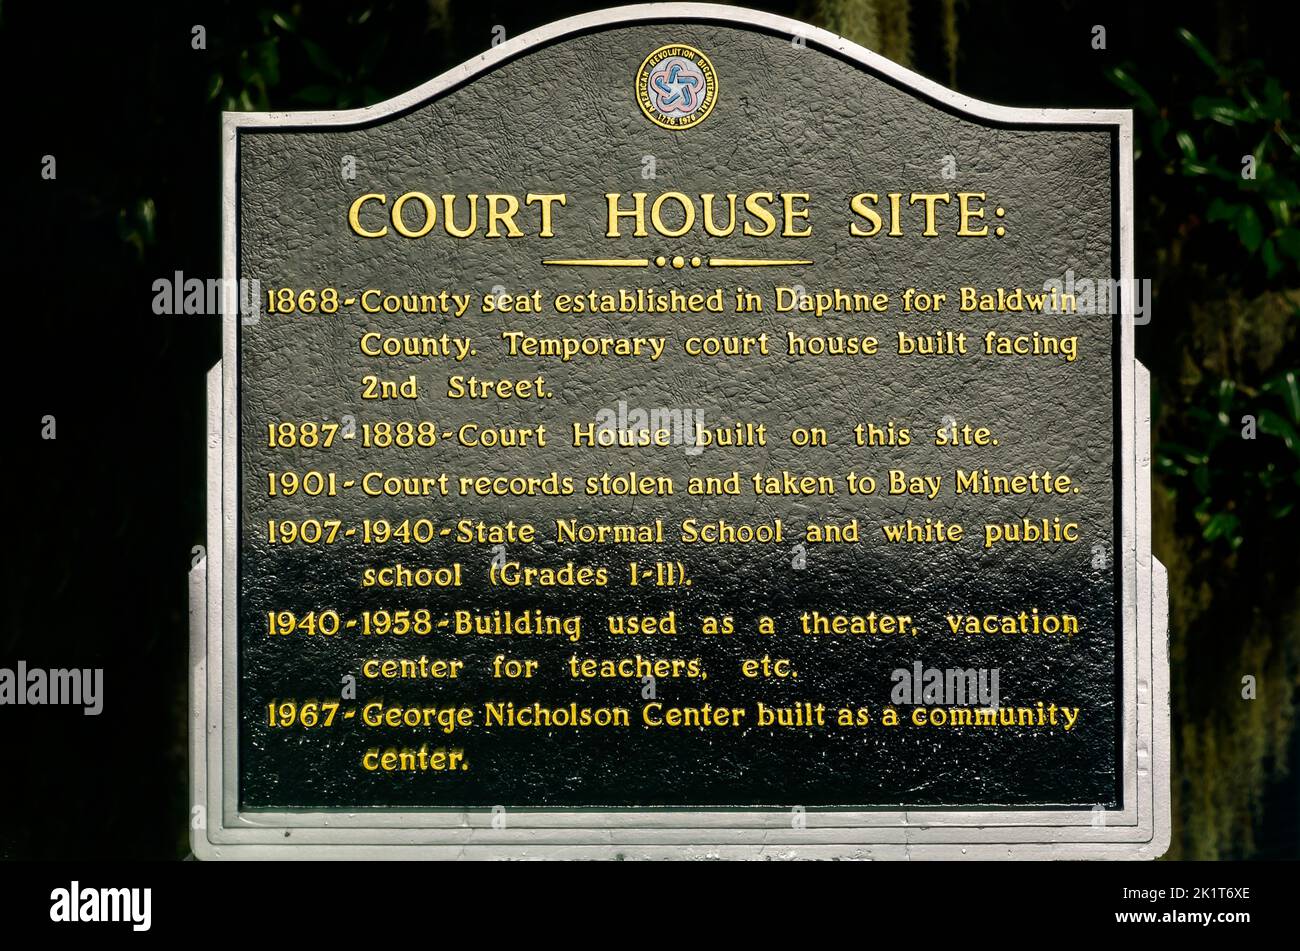 El sitio web de Daphne Court House se muestra el 8 de septiembre de 2022, en Daphne, Alabama. La sede del condado de Baldwin se estableció en Daphne en 1868. Foto de stock